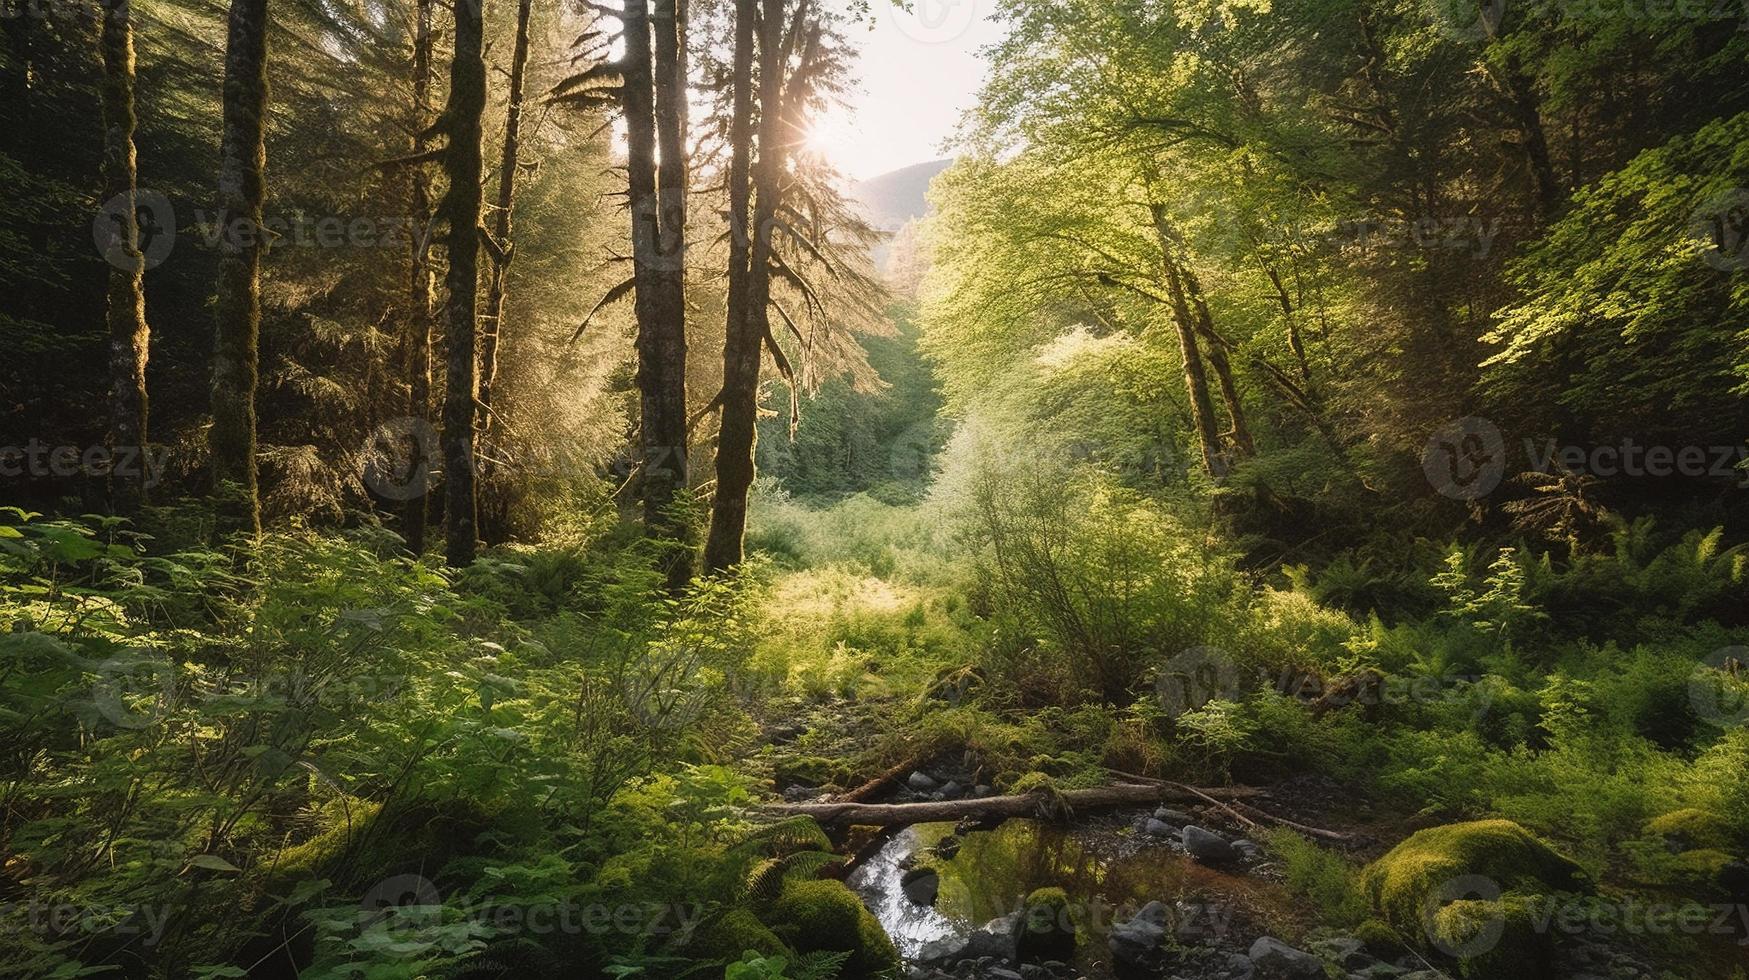 en fredlig skog clearing badade i värma solljus, omgiven förbi lång träd och frodig lövverk, med en mild ström sipprar genom de undervegetation och en avlägsen berg räckvidd synlig foto